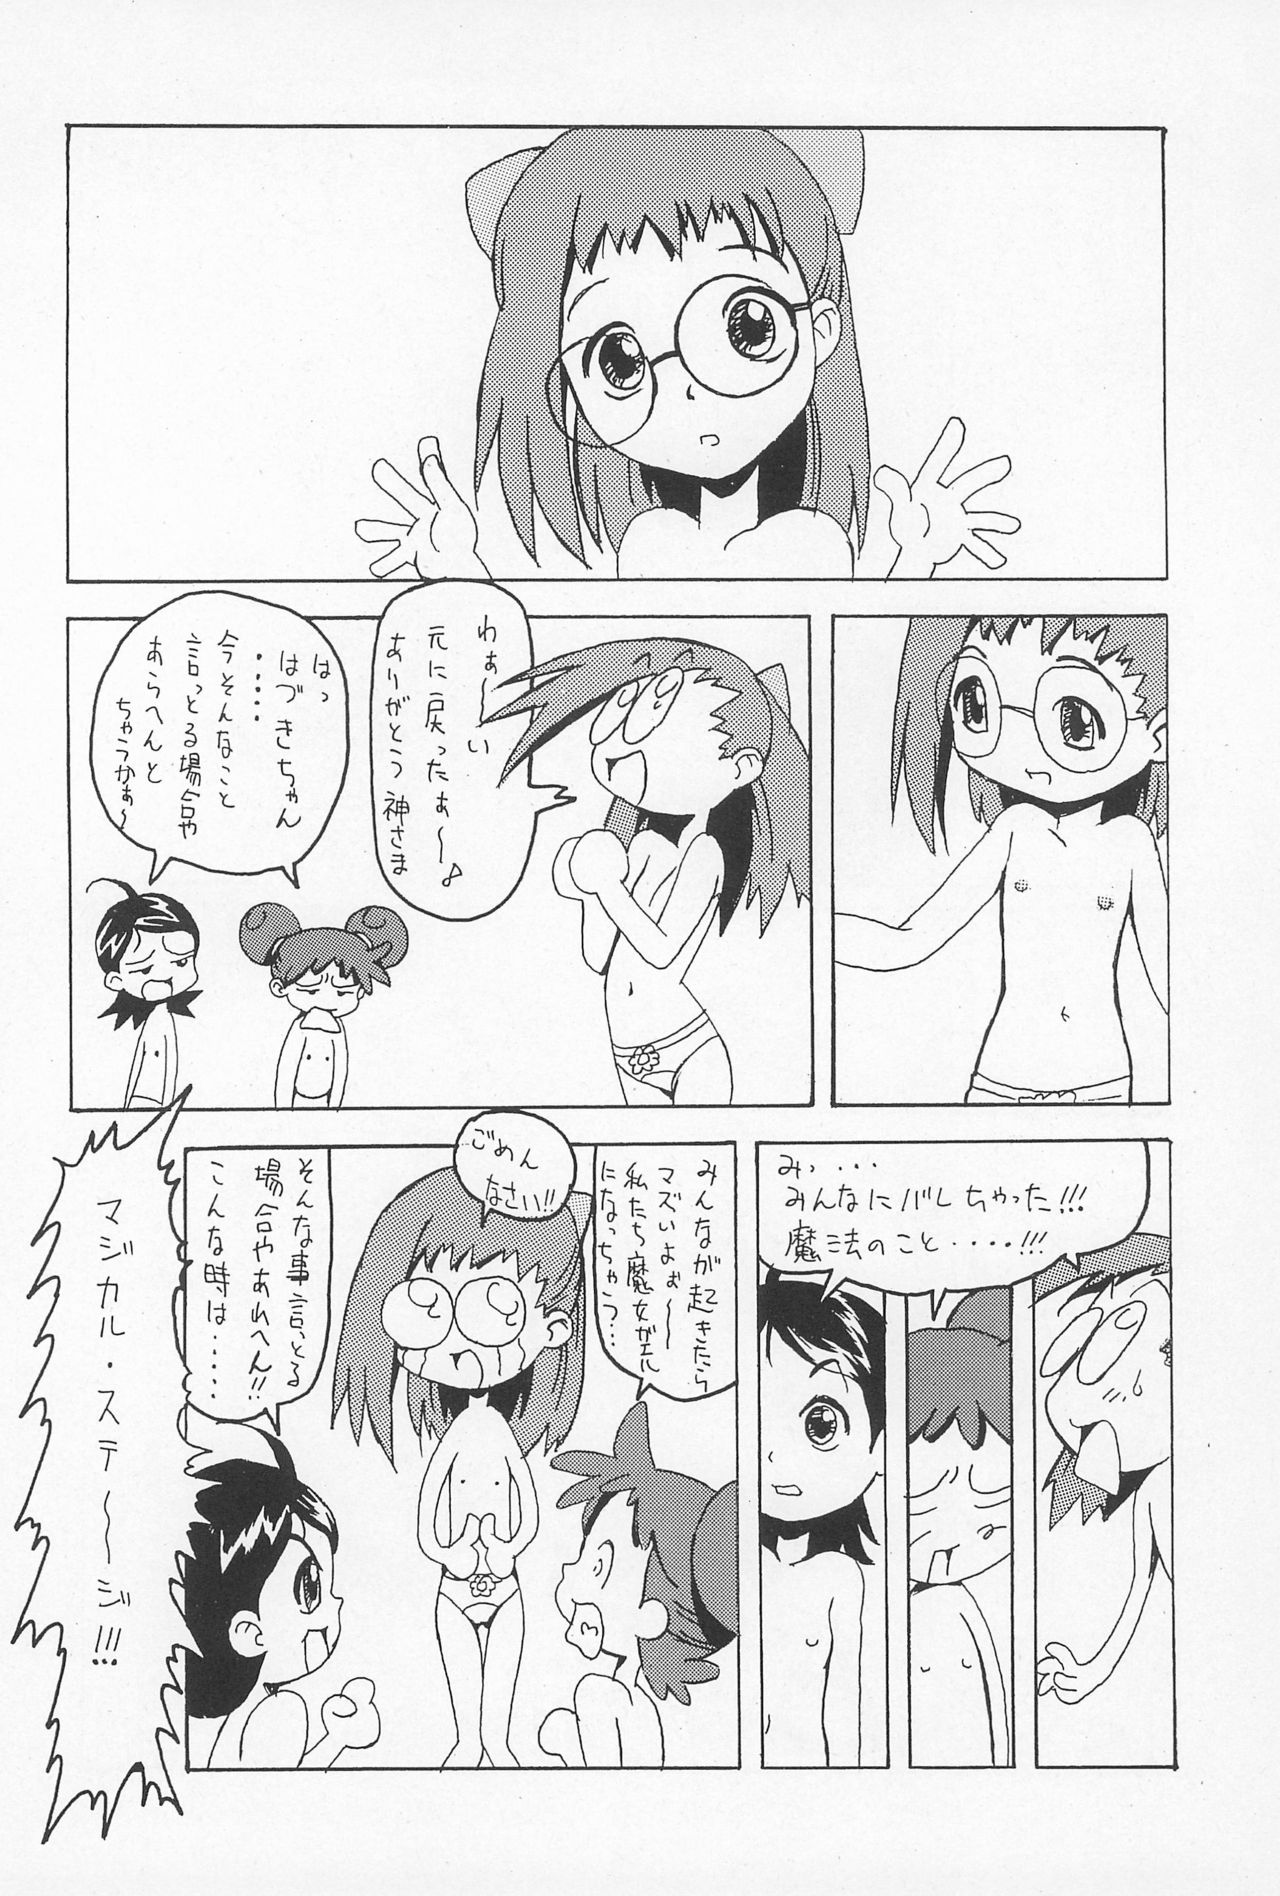 (CR25) [Nekketsu Kouenji Housoukyoku, KENIX (Katori Youichi, Ninnin!)] Doremi Fa So La Si Do (Ojamajo Doremi) page 16 full